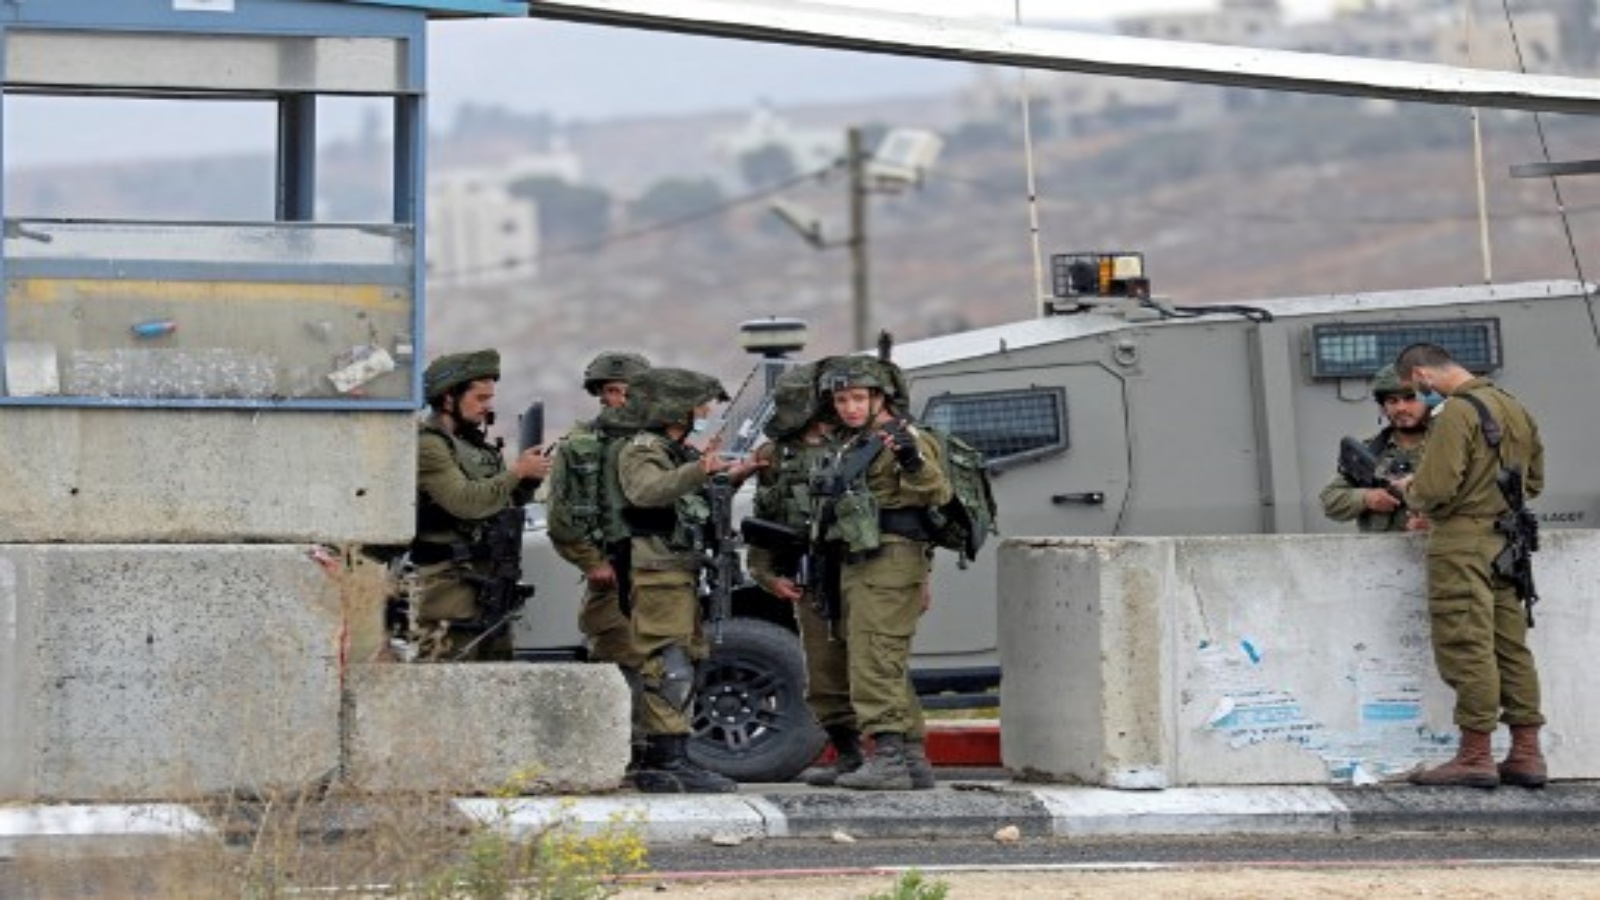 جنود إسرائيليون يتجمعون عند حاجز بالقرب من نابلس في الضفة الغربية المحتلة حيث قُتل فلسطيني أطلق النار على جنود إسرائيليين في 4 نوفمبر 2020